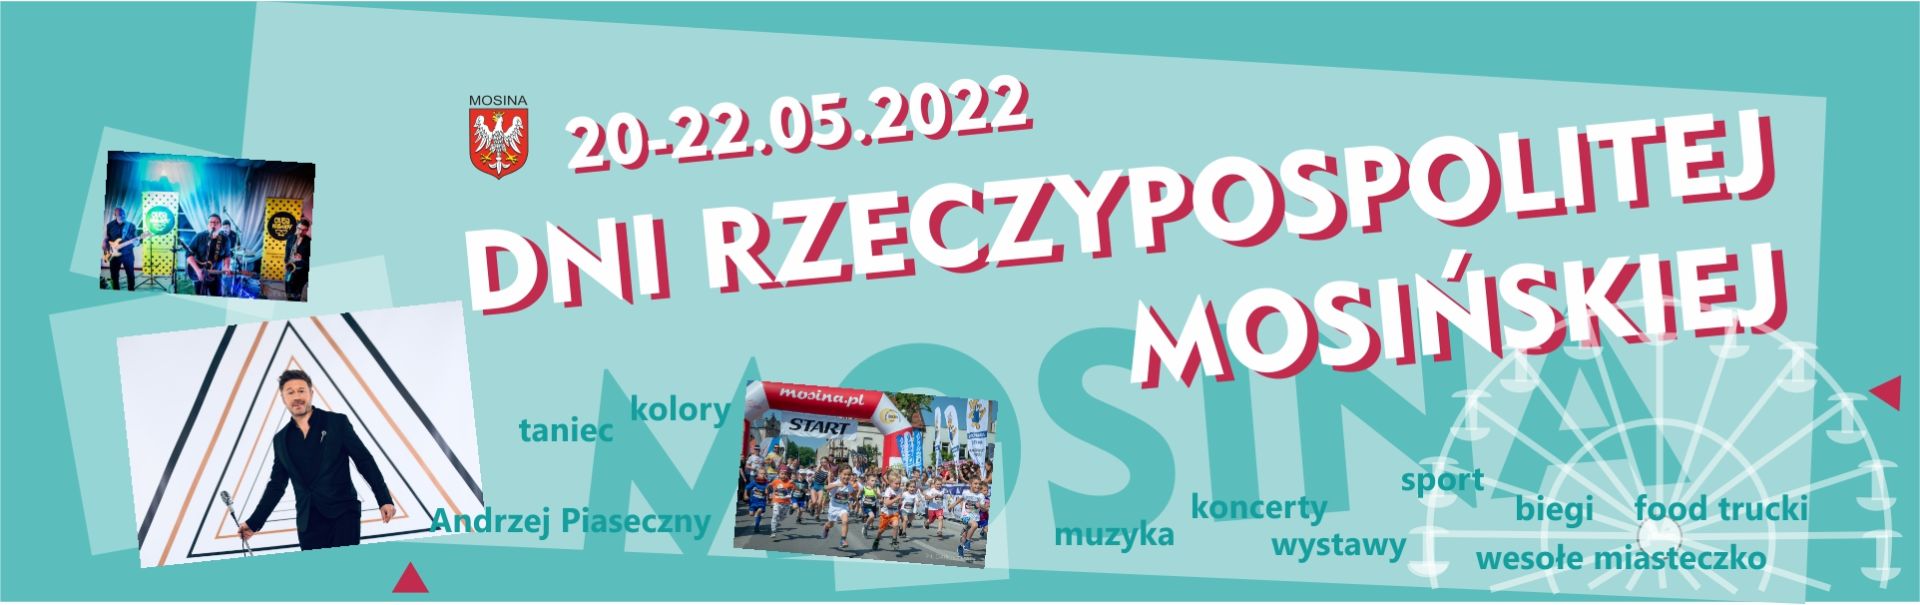 Dni Rzeczypospolitej Mosińskiej 2022